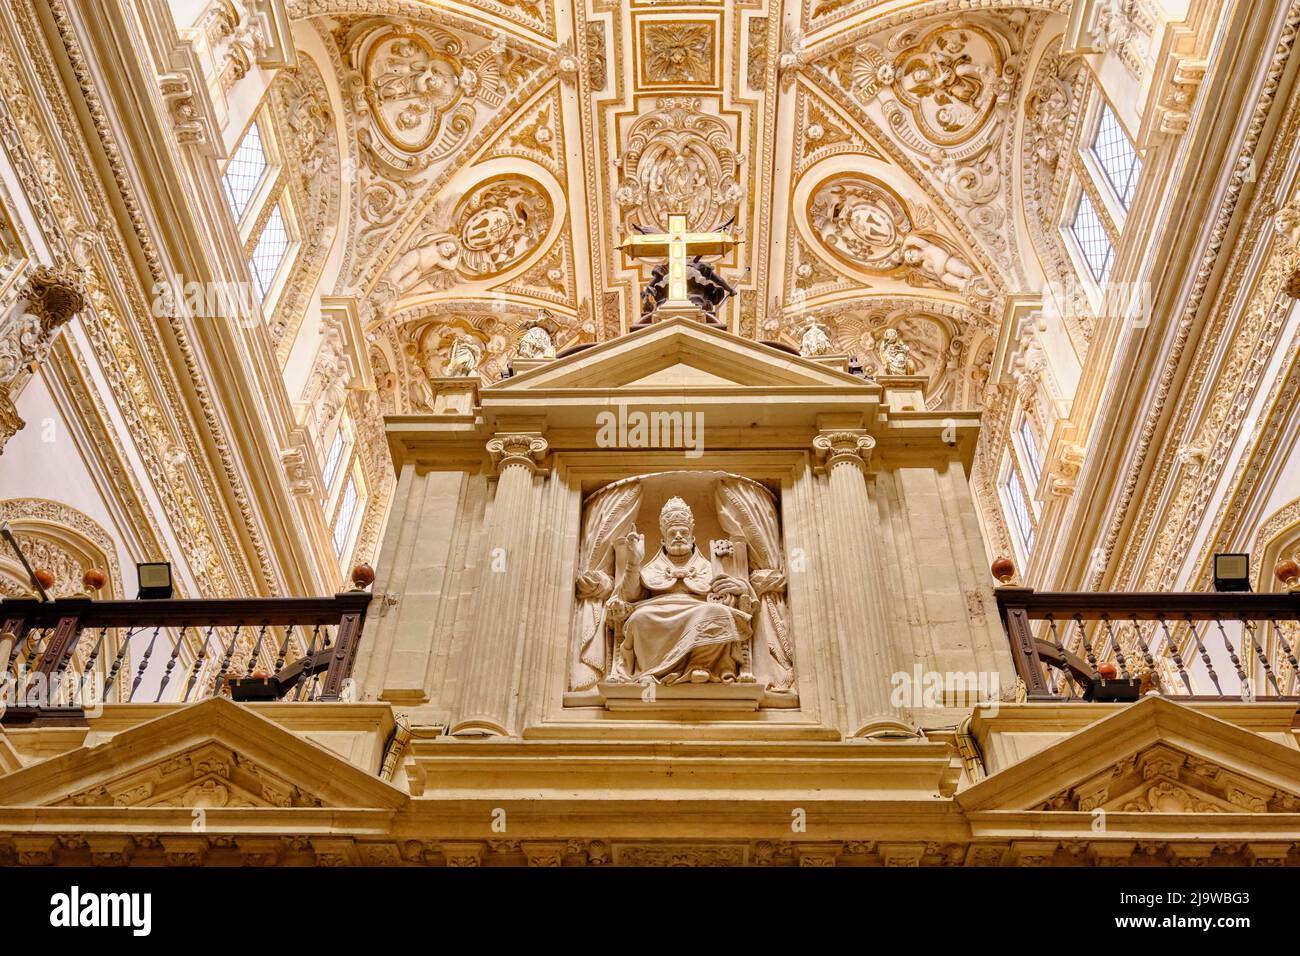 Intérieur de la Mezquita-Catedral (Mosquée-cathédrale) de Cordoue, site classé au patrimoine mondial de l'UNESCO. Andalousie, Espagne Banque D'Images